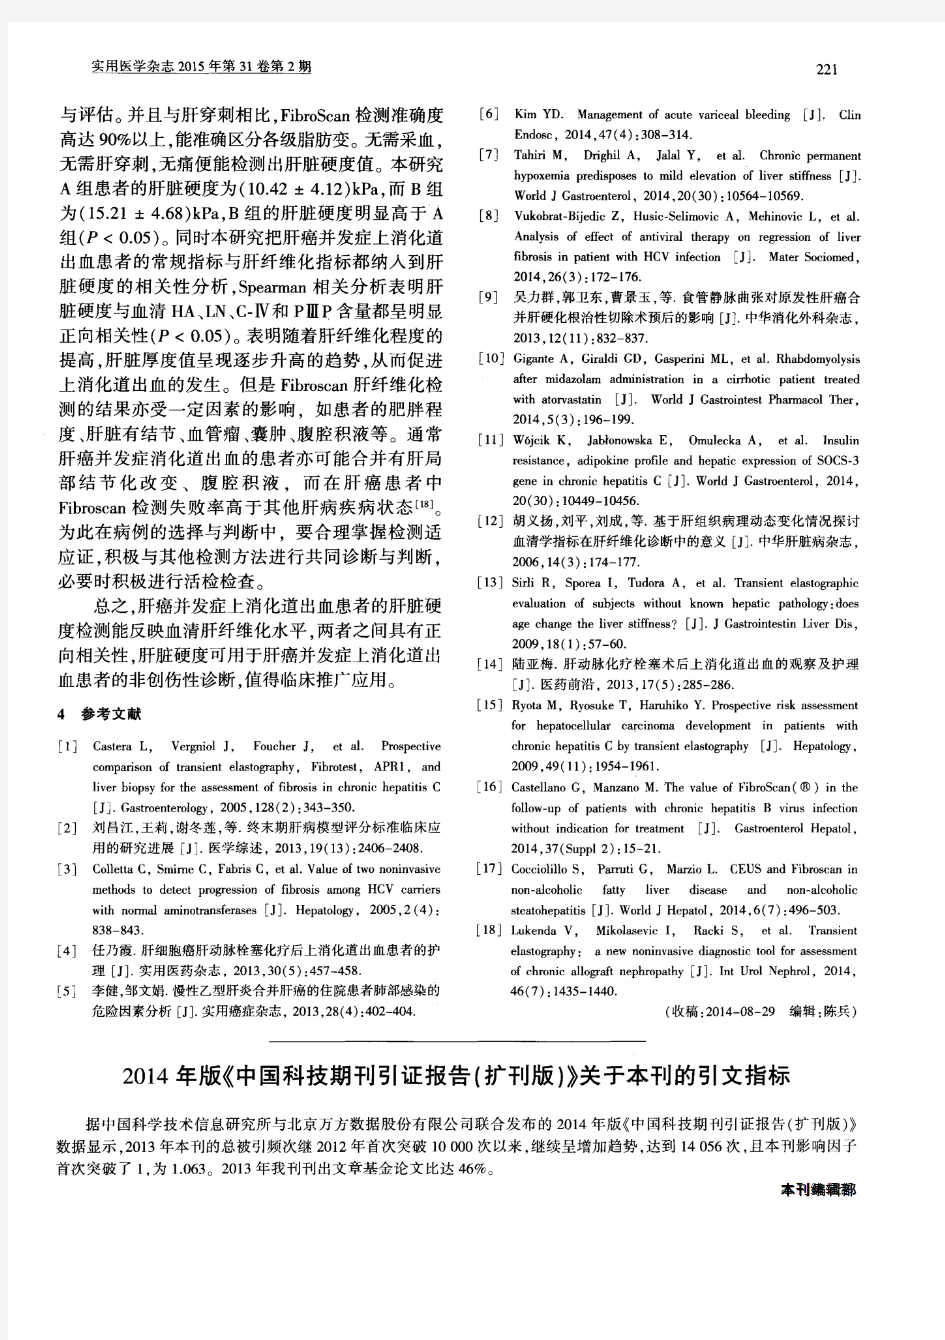 2014年版《中国科技期刊引证报告(扩刊版)》关于本刊的引文指标-论文